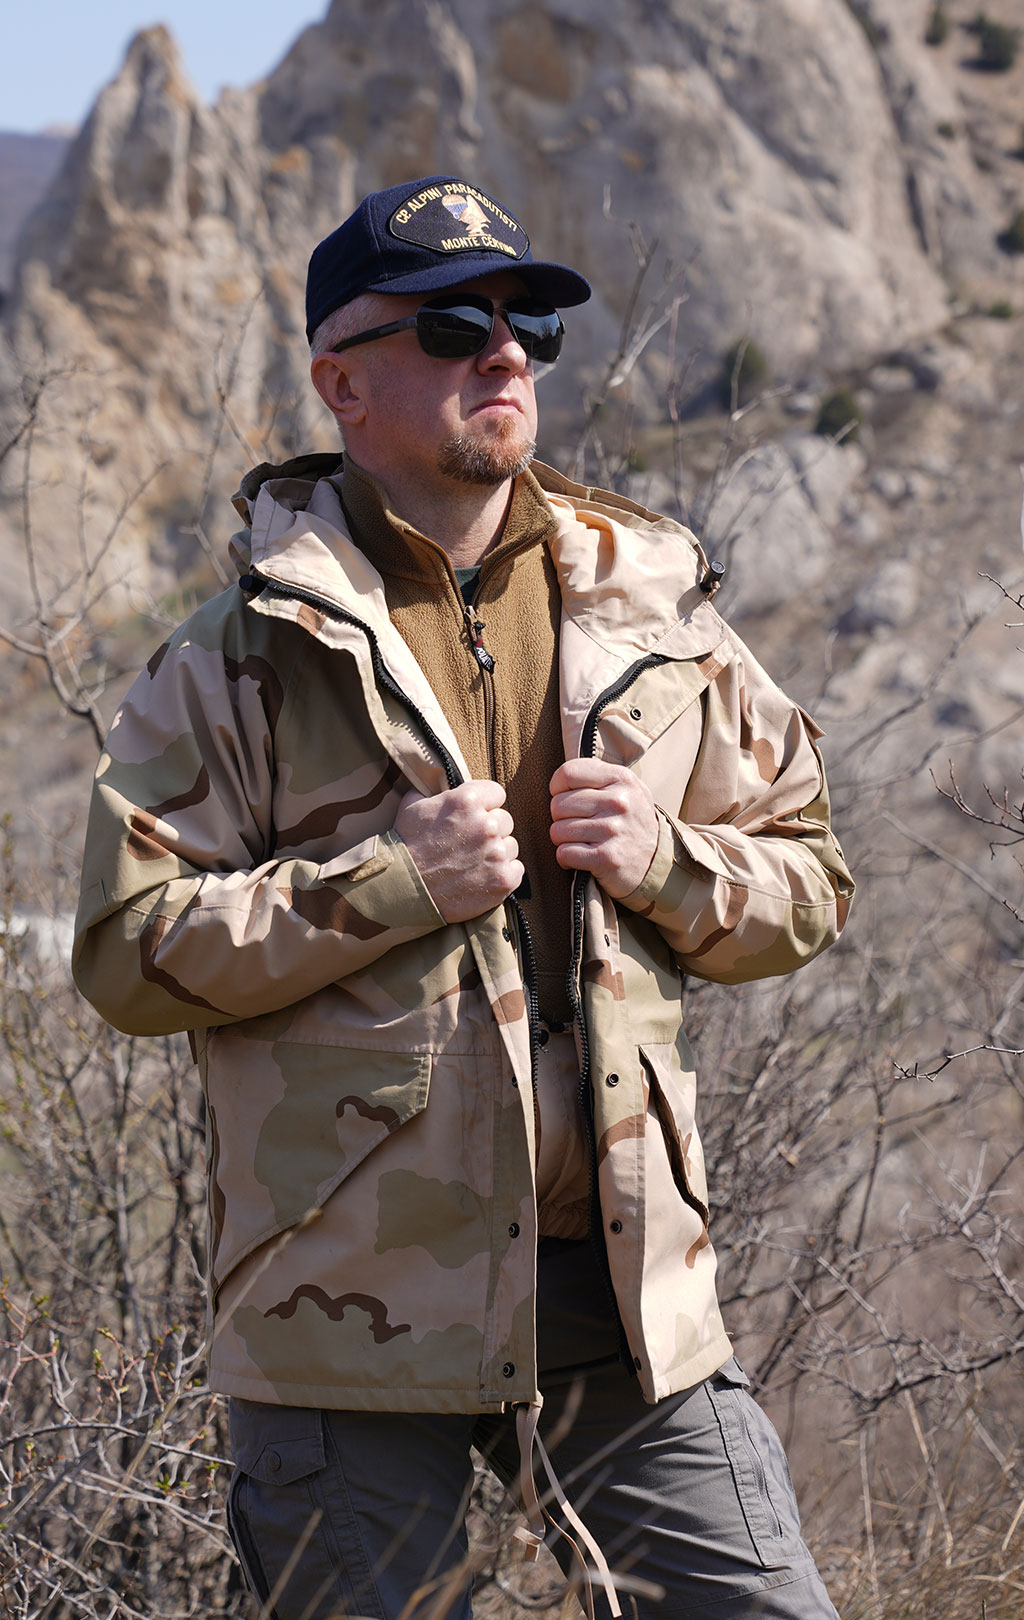 Куртка непромокаемая Gore-Tex Gore-Tex desert-3 США, купить вИнтернет-магазине ForceAge.